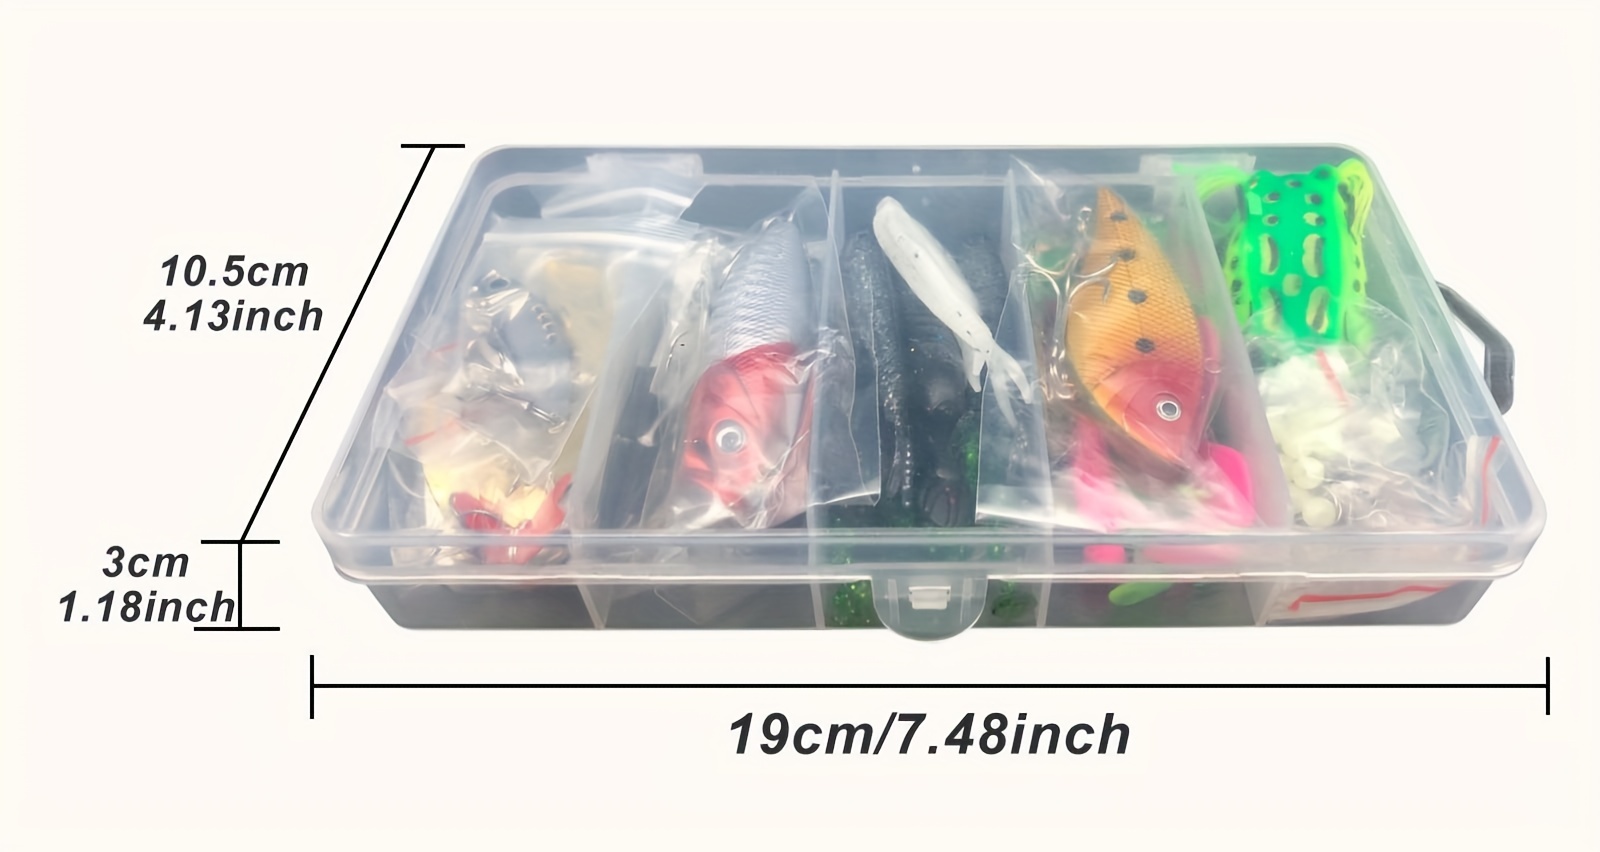 Suzicca 304pcs Fishing Accessories Kit Fishing Tackle Kit Fishing Gear